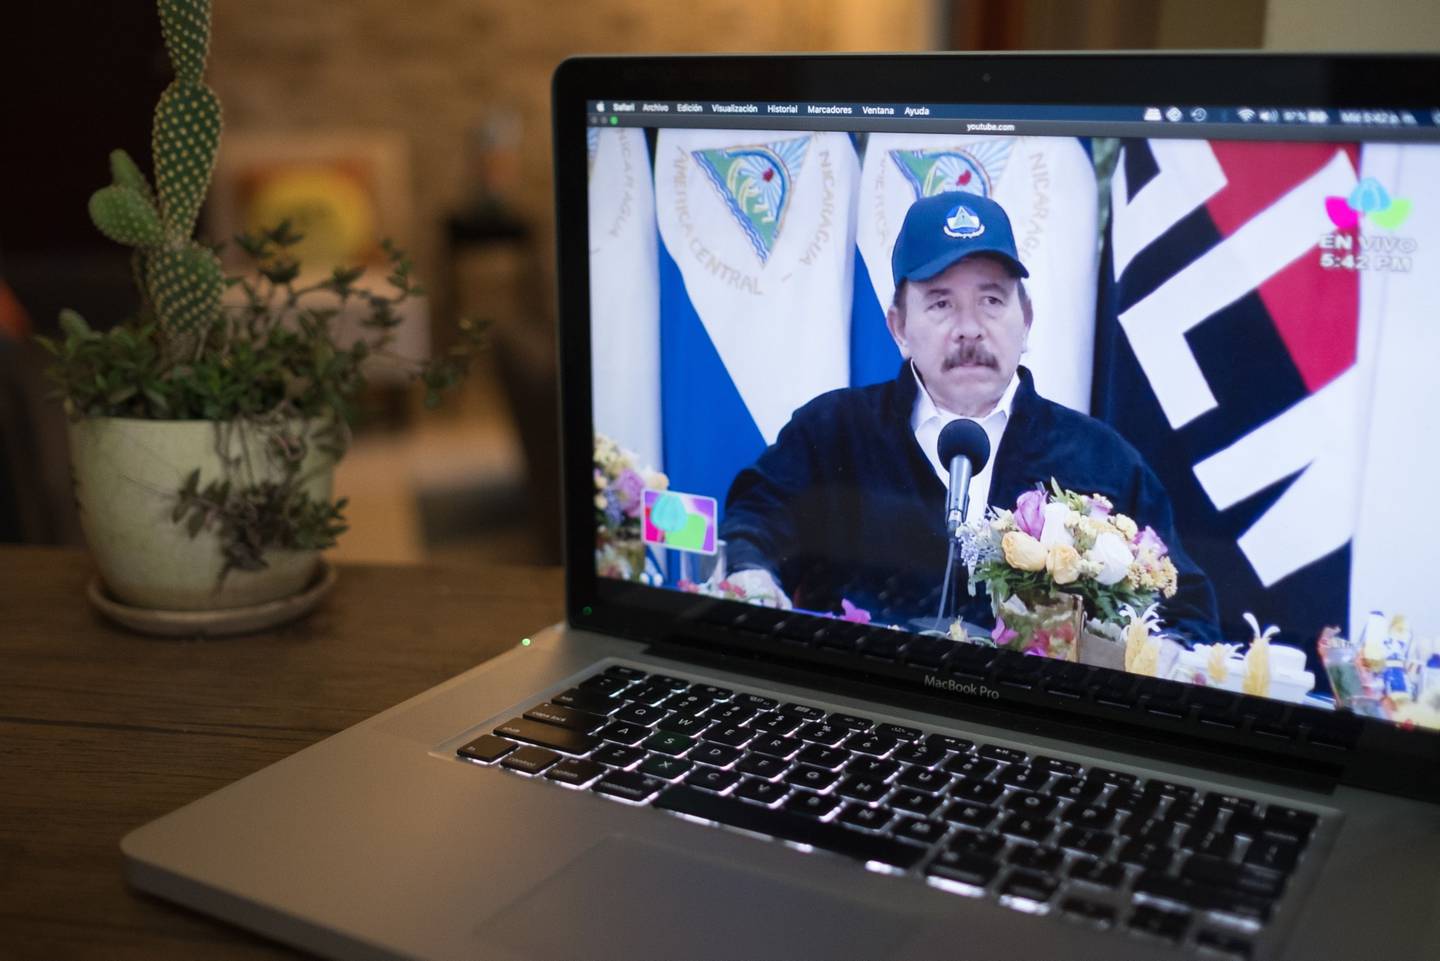 Daniel Ortega, presidente de Nicaragua, aparece en una pantalla de computadora portátil durante un discurso nacional televisado en esta fotografía arreglada en Managua, Nicaragua, el miércoles 15 de abril de 2020.